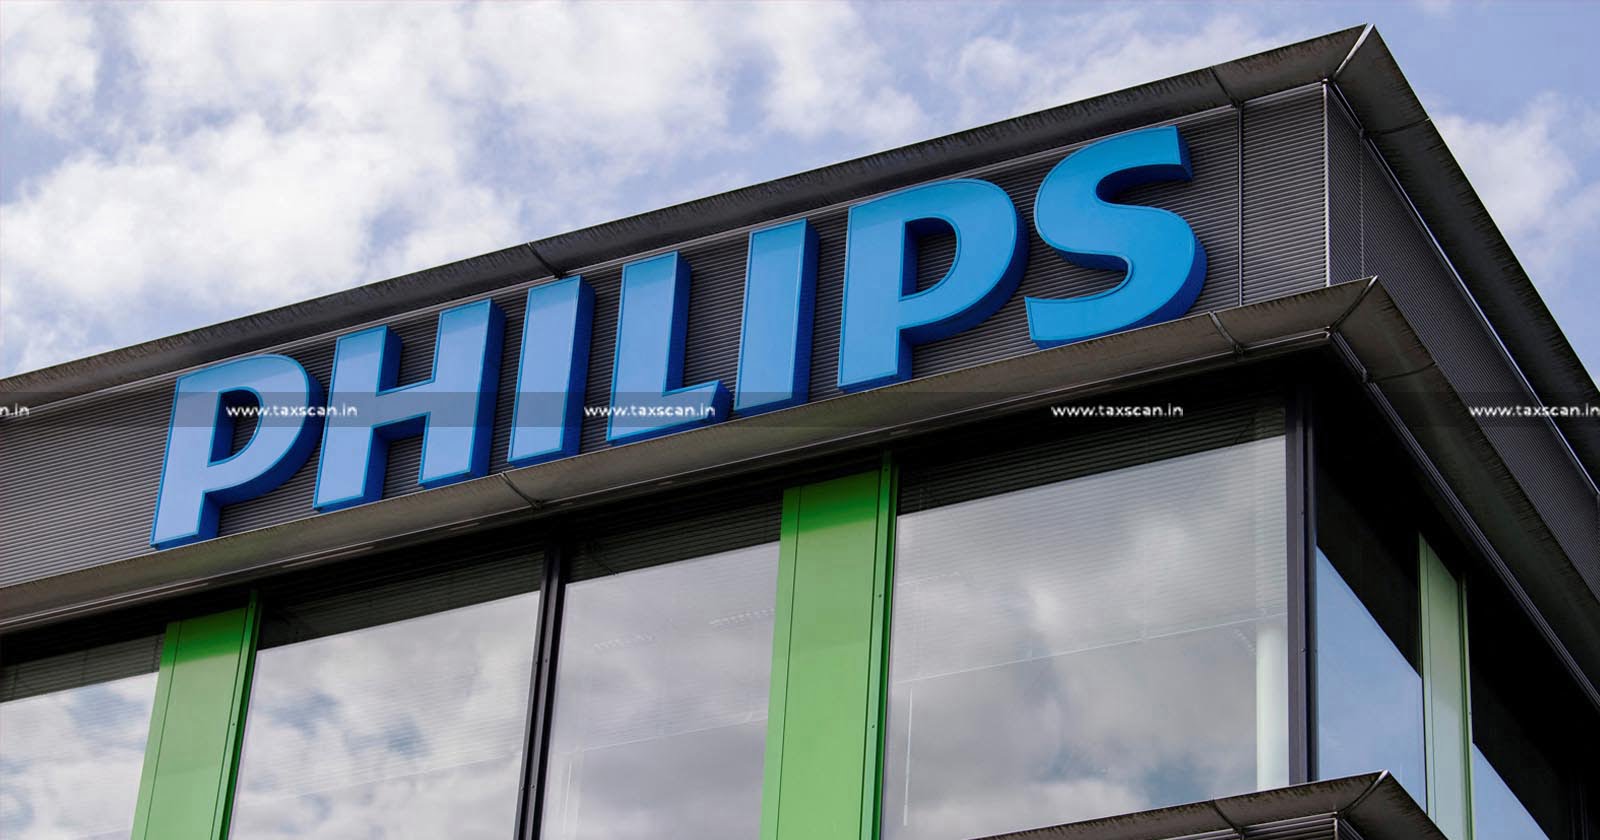 MBA Vacancy in Philips - CA Vacancy in Philips - Jobscan - CA Hiring in Philips - taxscan